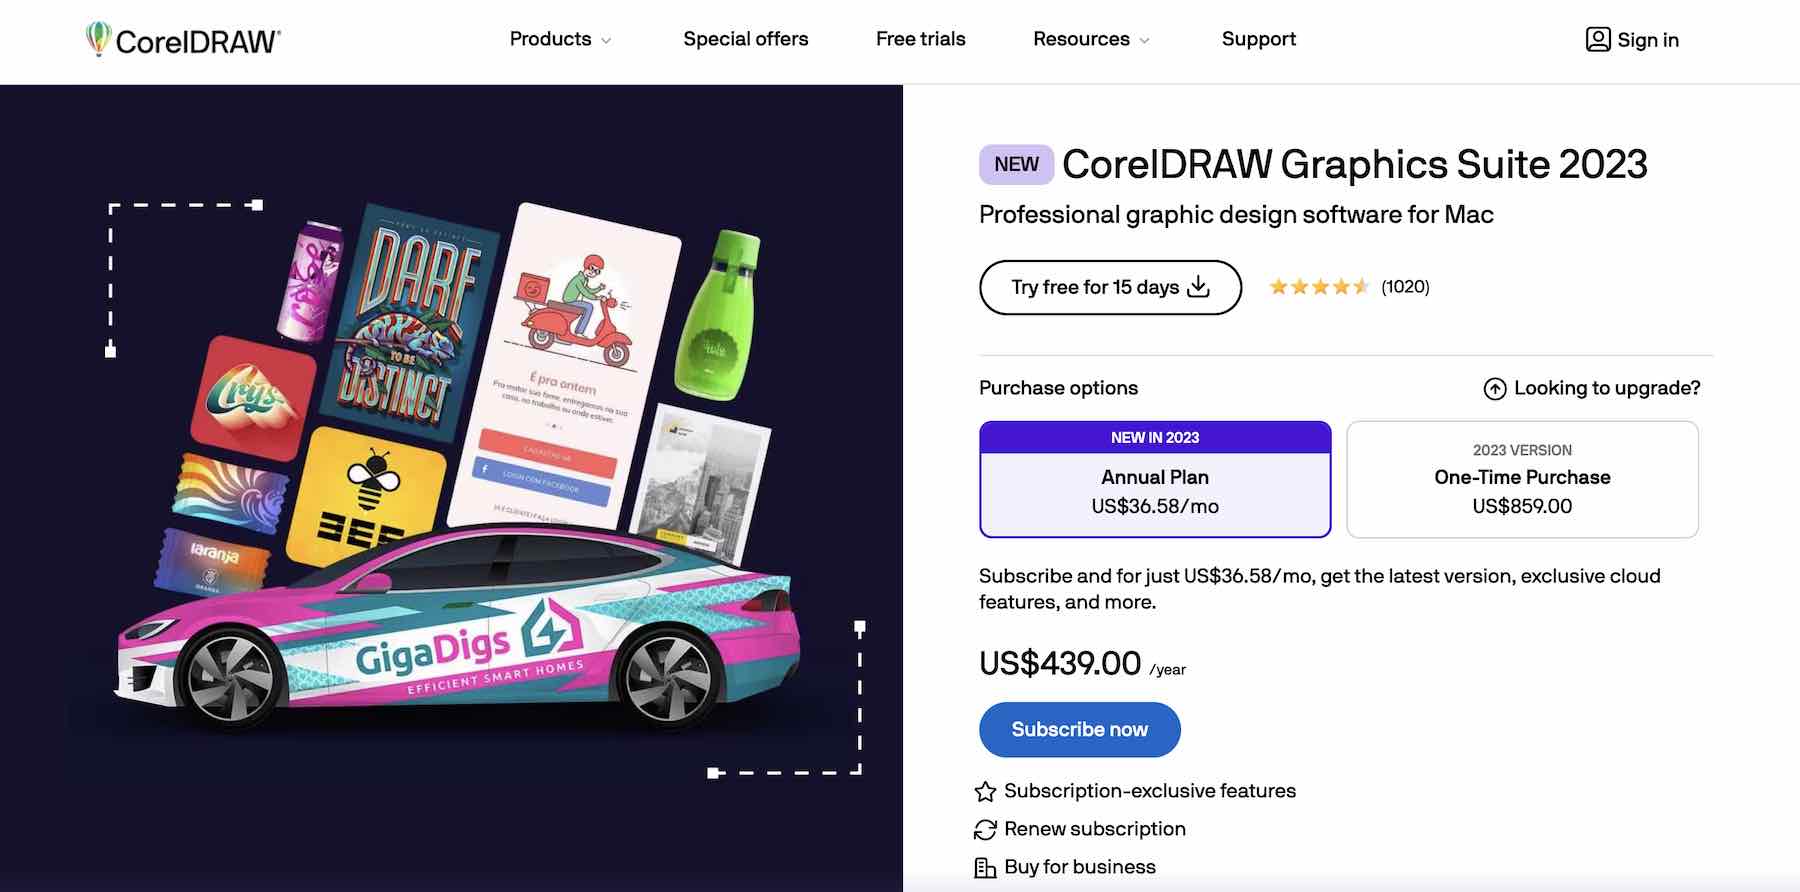 Zrzut ekranu witryny internetowej CorelDRAW przedstawiający plany cenowe